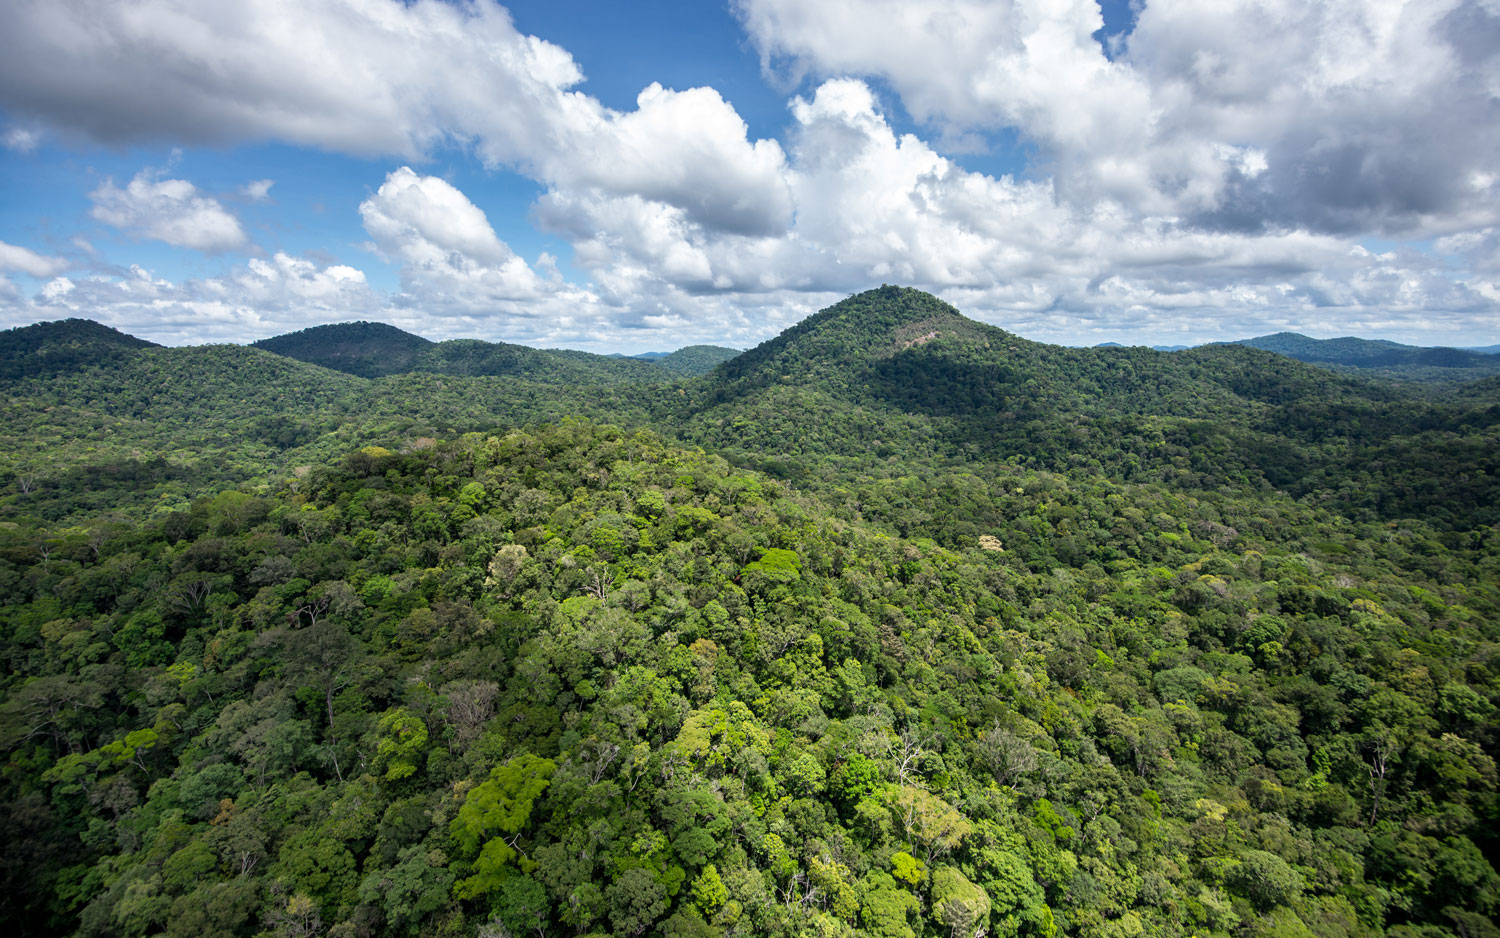 Relief au cœur de forêt guyanaise - crédit Gilles Kleitz pour le Parc amazonien de Guyane